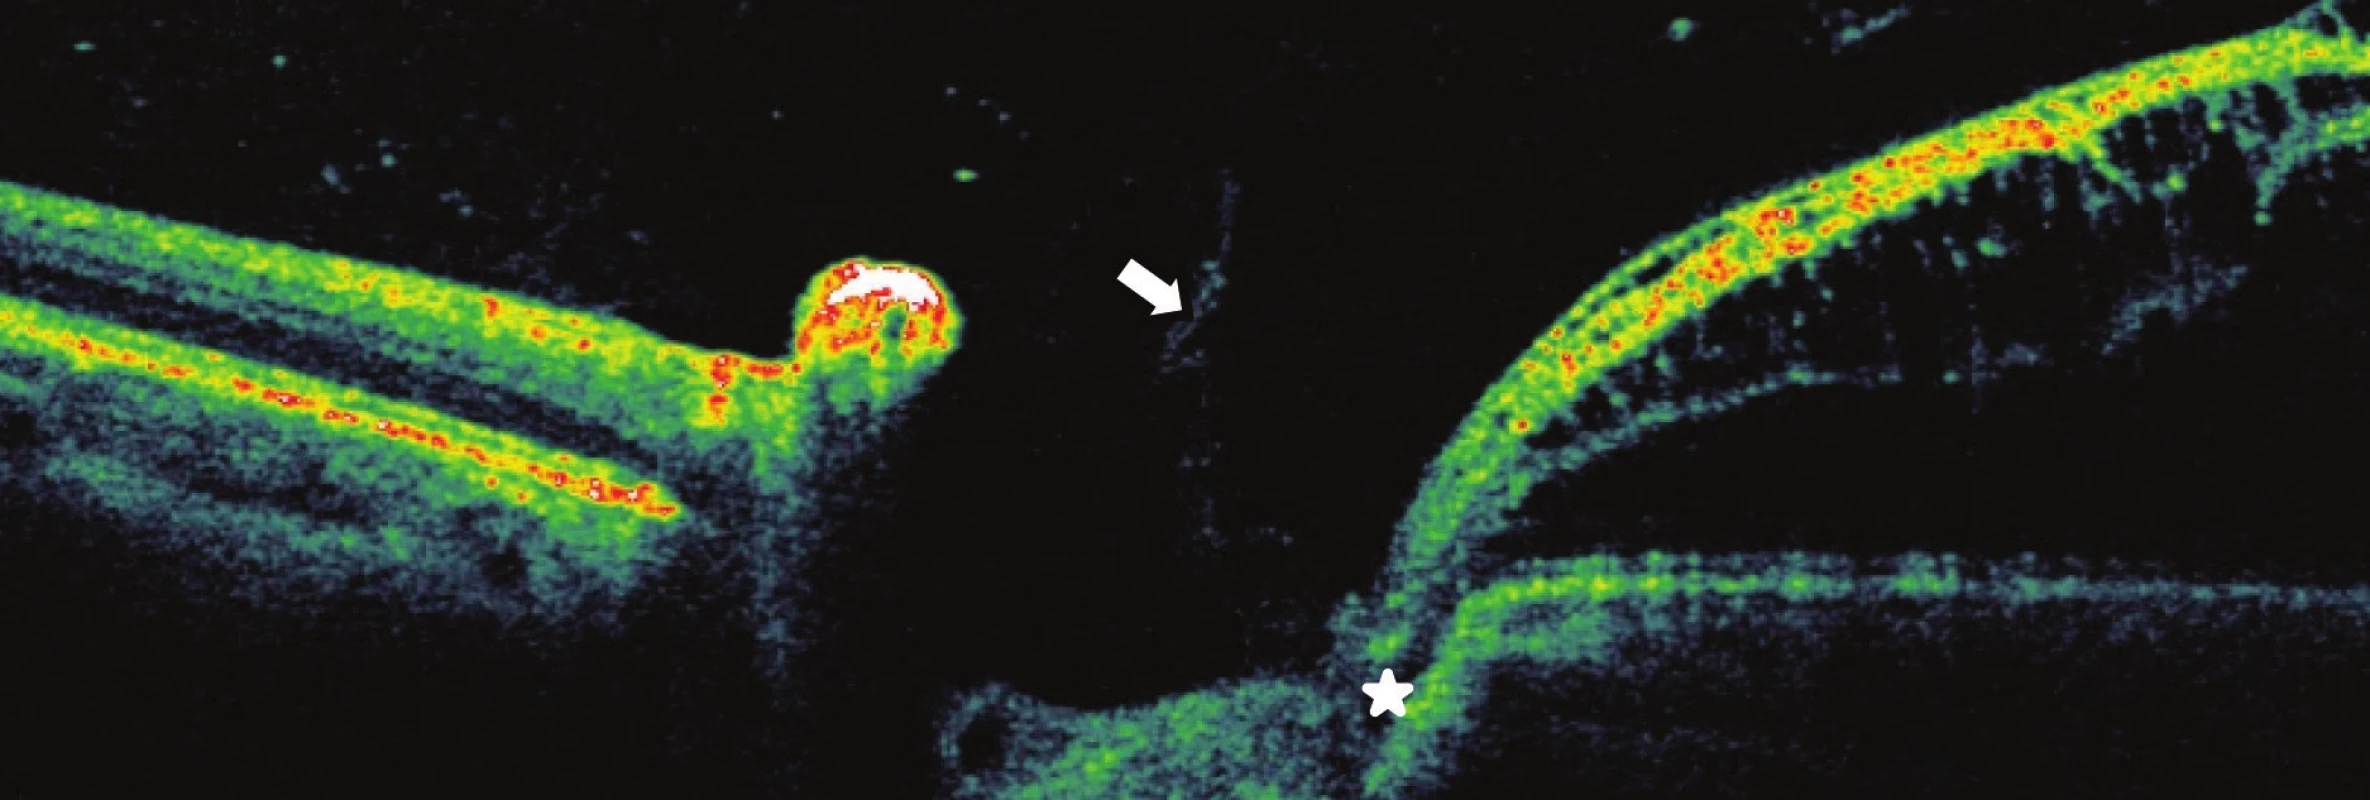 Pacient č. 4
Lineární horizontální transpapilární OCT scan OL, interpapilární proliferace (šipka), zachycena komunikace jamky terče s makulární retinoschízou zevní vrstvy sítnice RSE*